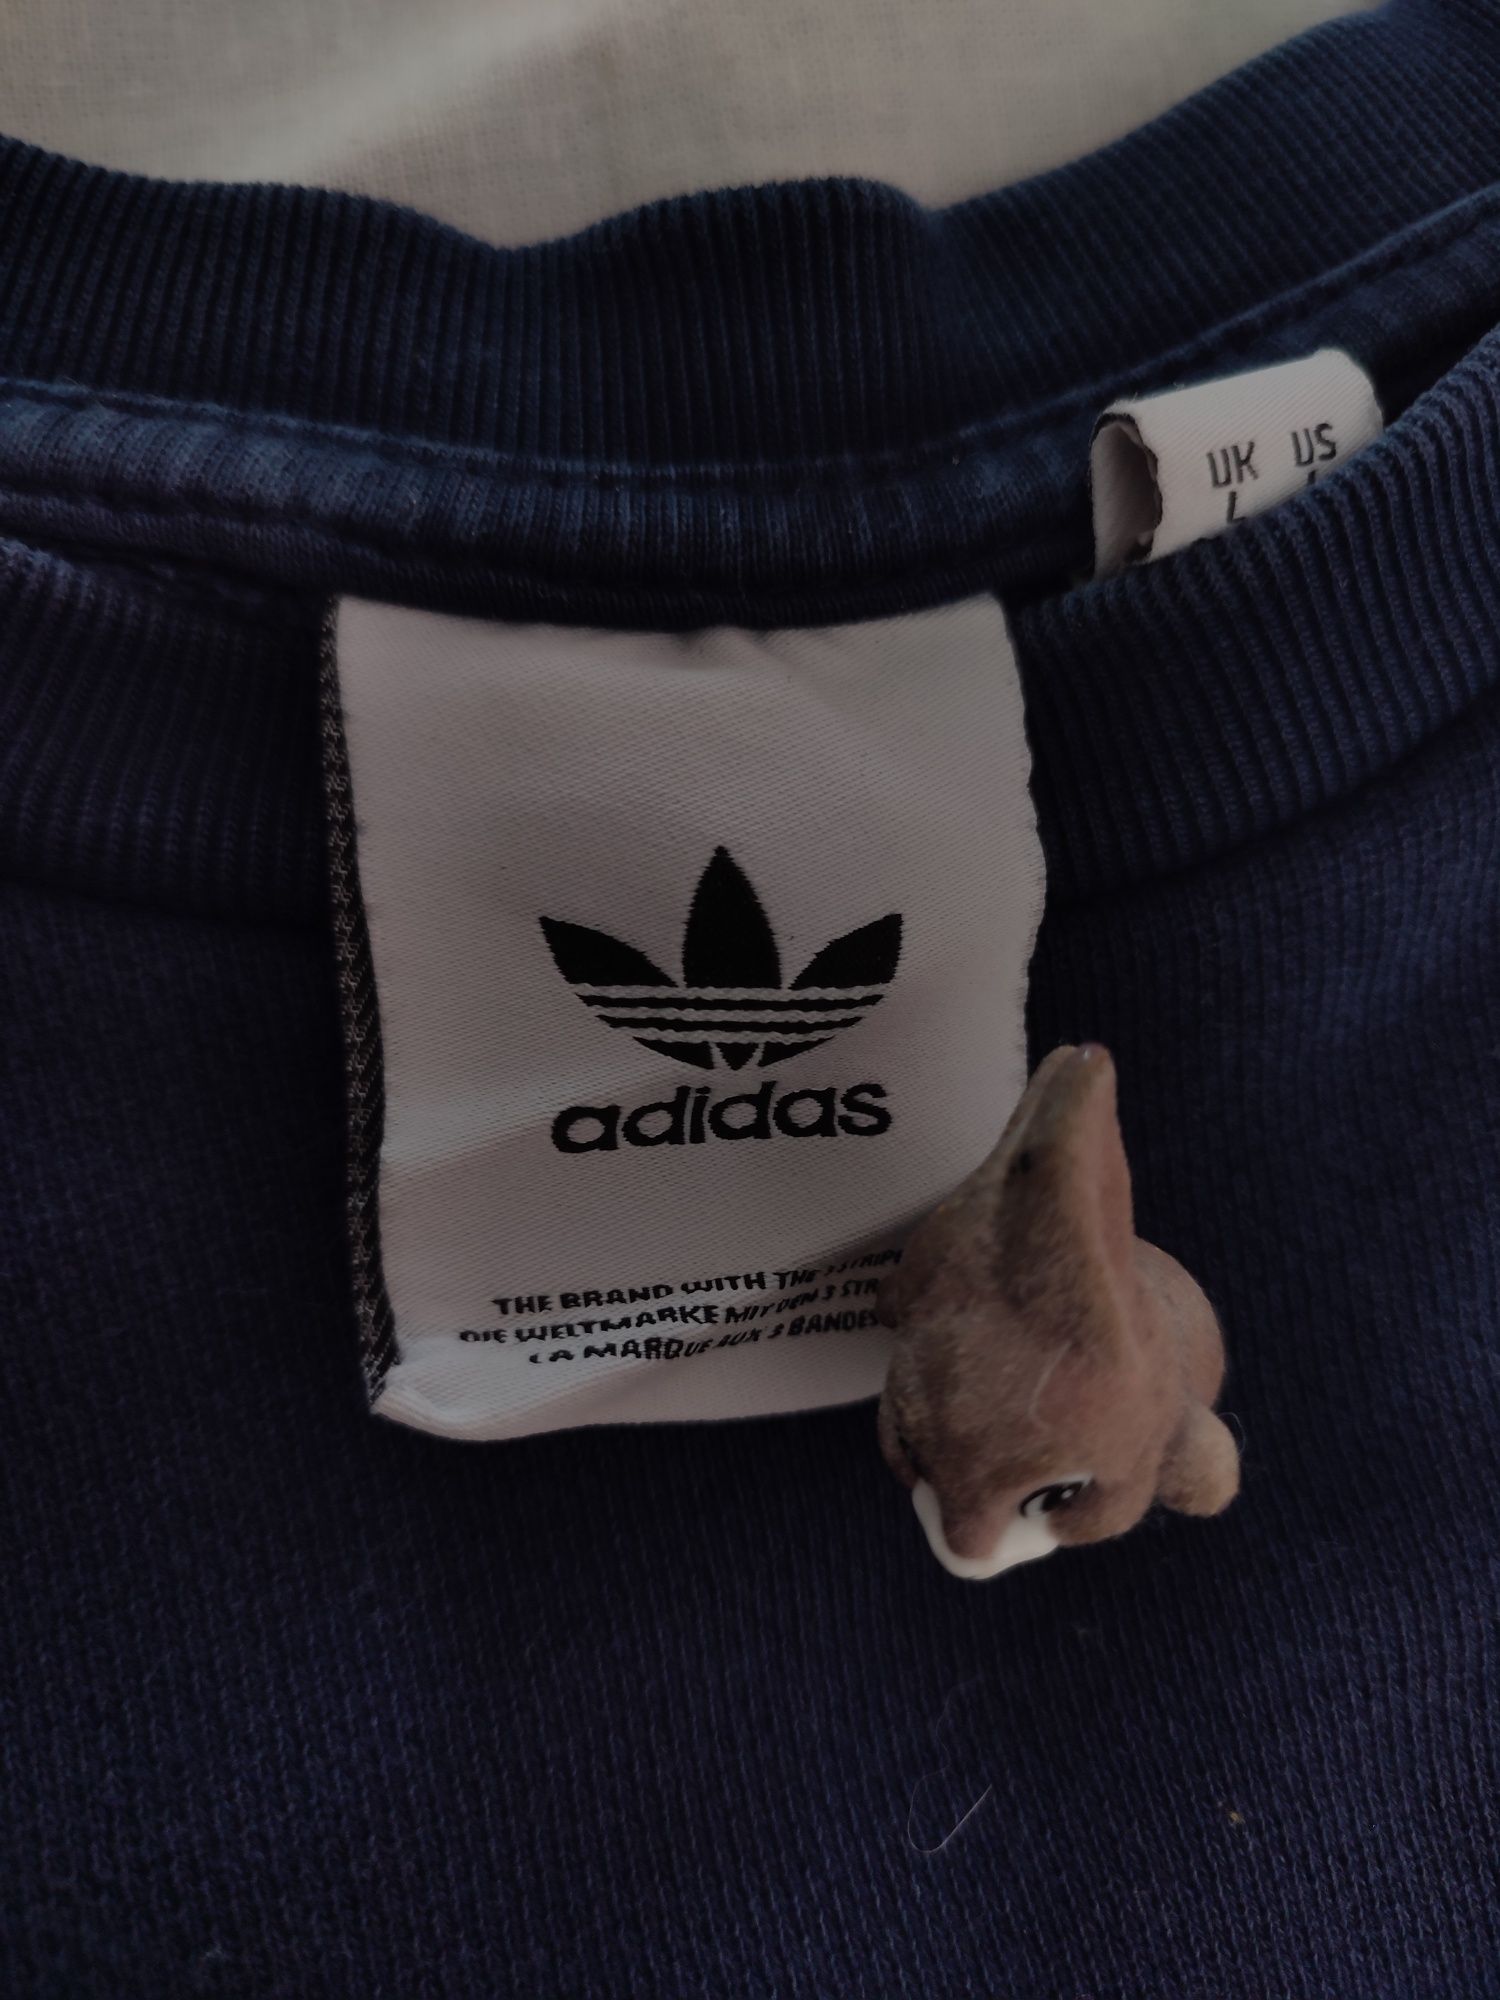 Світшот Adidas + в подарунок футболка Stone Island